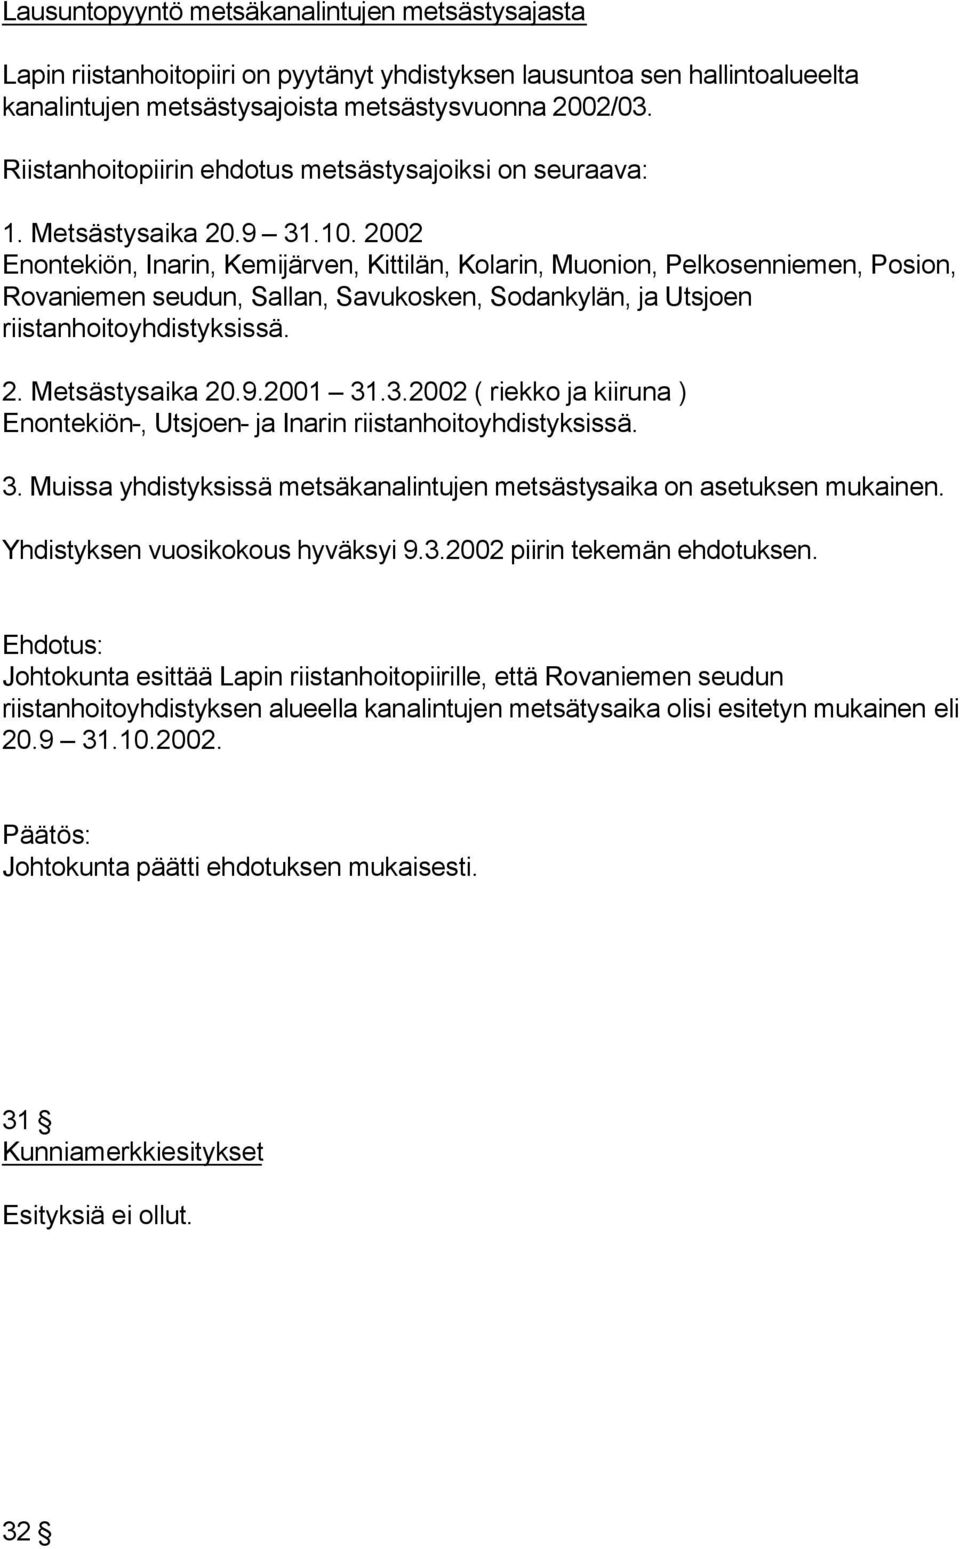 2002 Enontekiön, Inarin, Kemijärven, Kittilän, Kolarin, Muonion, Pelkosenniemen, Posion, Rovaniemen seudun, Sallan, Savukosken, Sodankylän, ja Utsjoen riistanhoitoyhdistyksissä. 2. Metsästysaika 20.9.